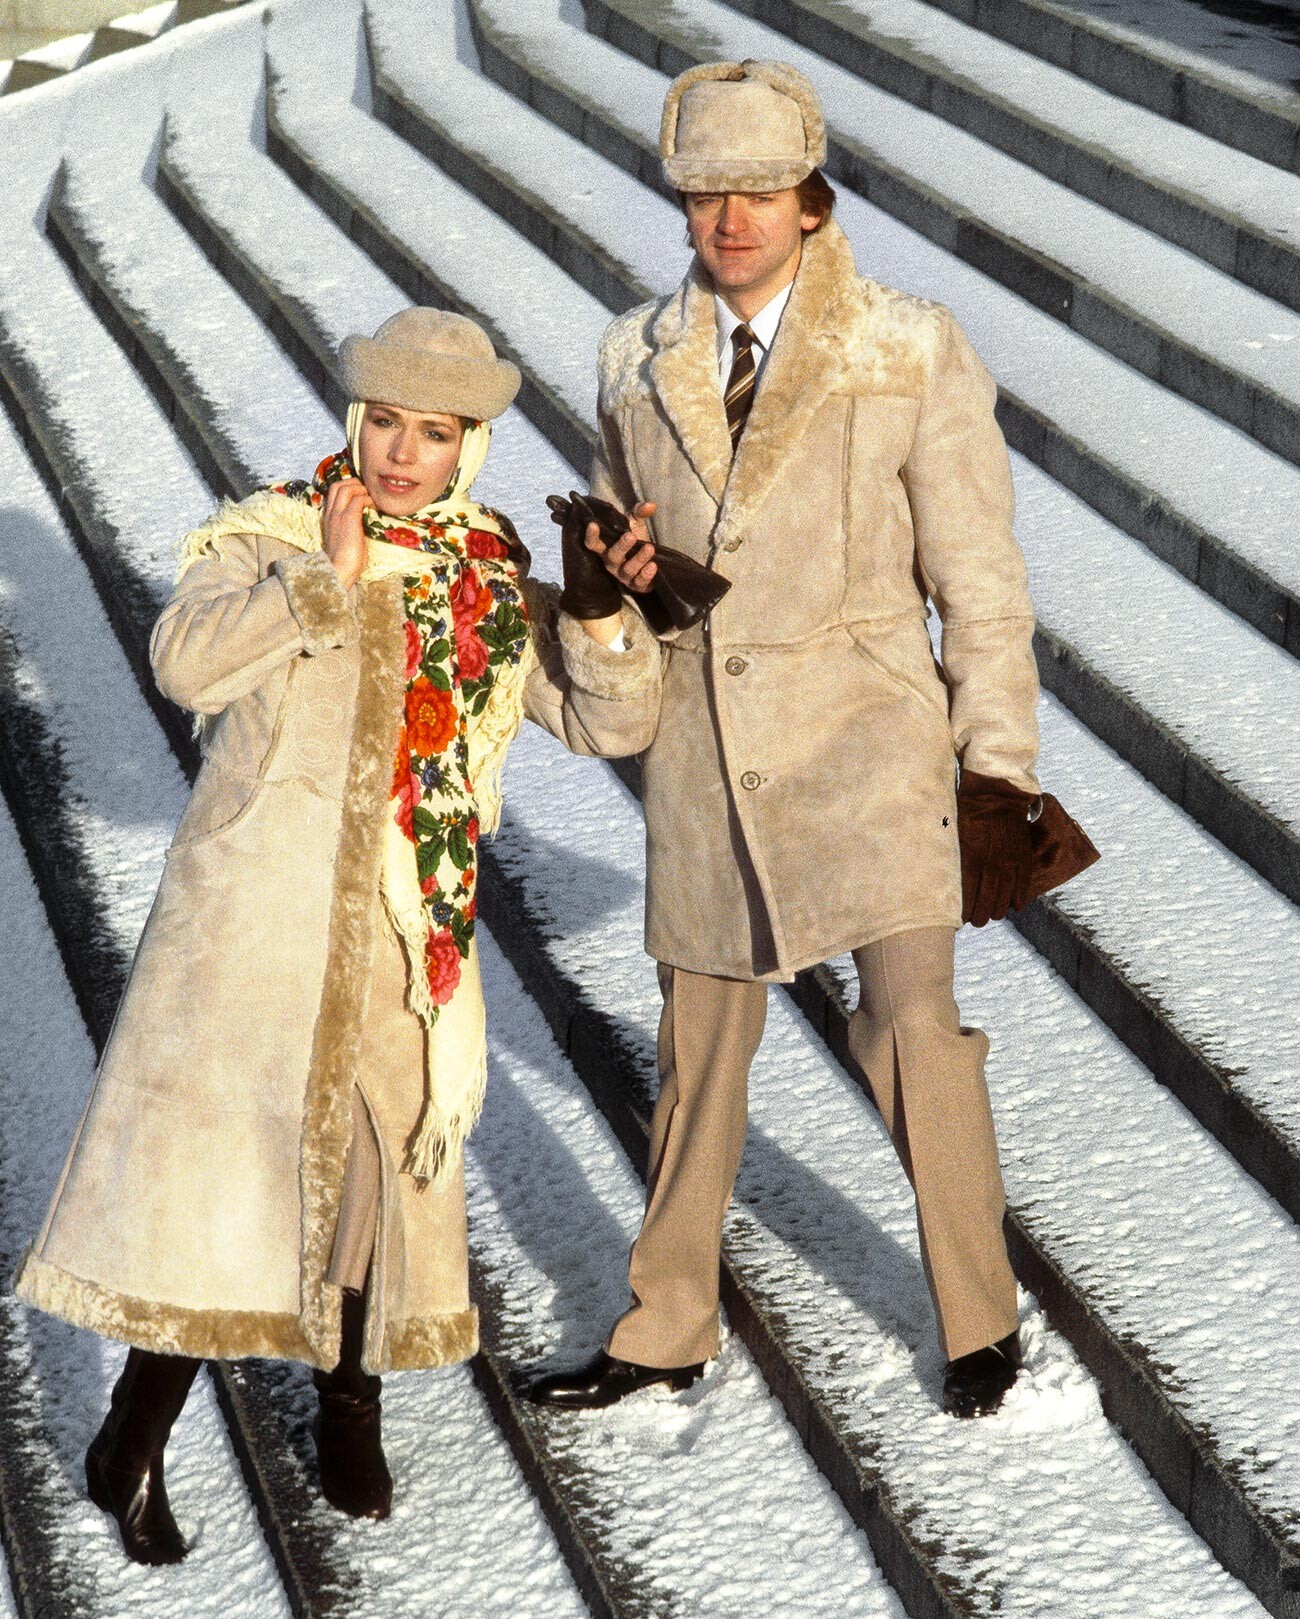 Soviet people in winter coats.